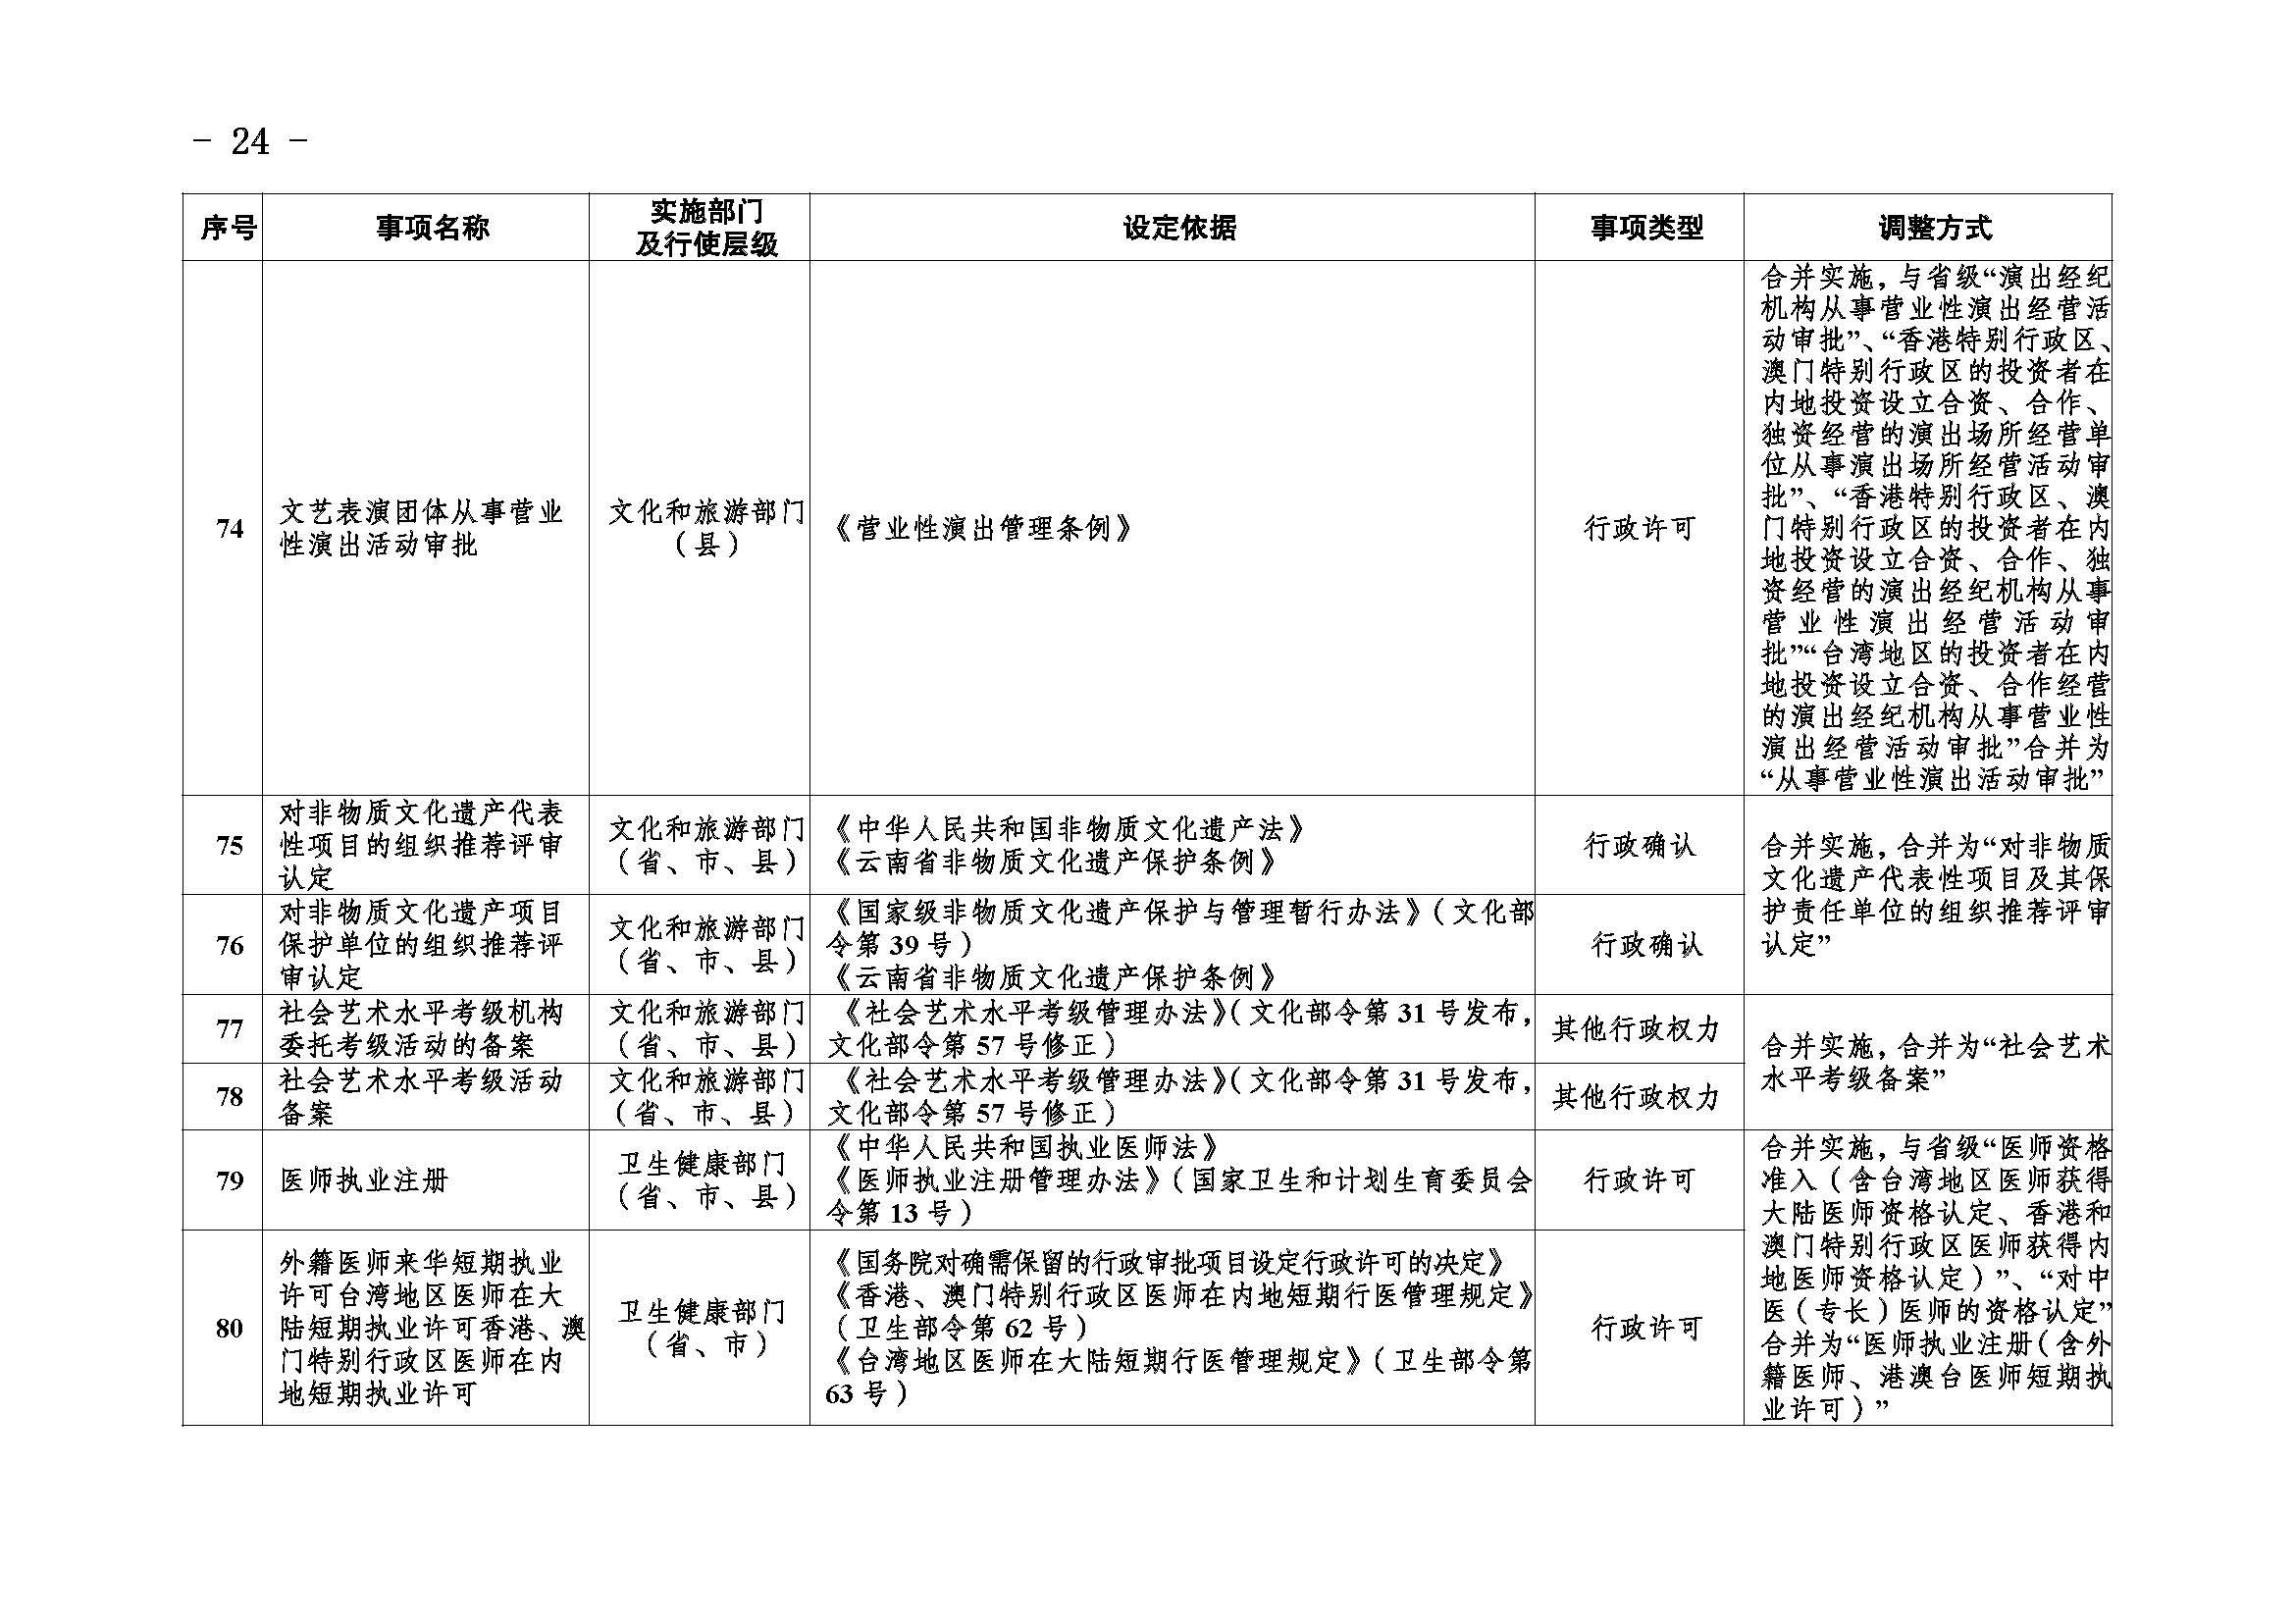 临沧市人民政府办公室关于做好调整370项行政权力事项工作的通知_页面_24